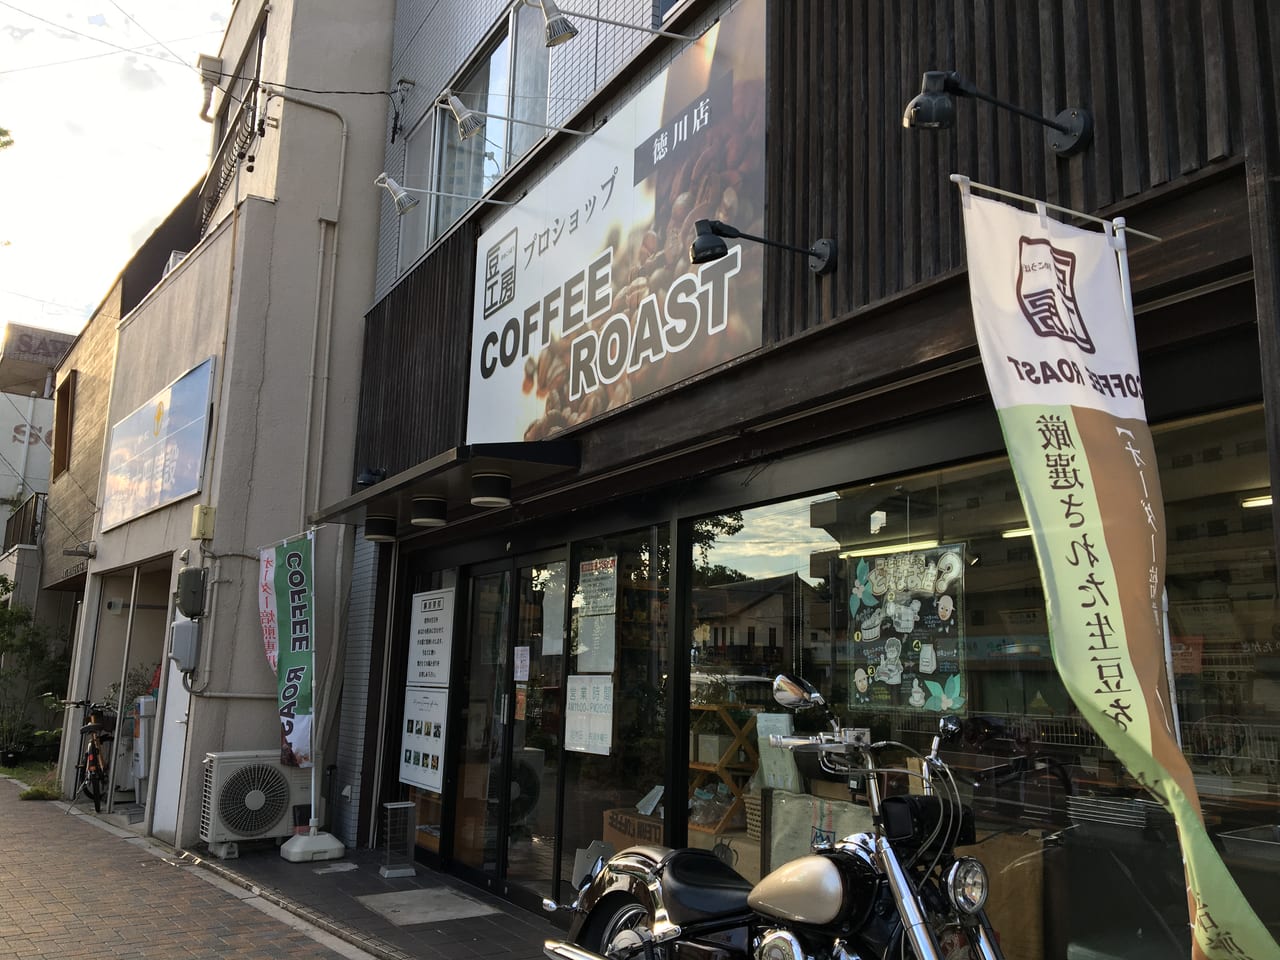 豆工房コーヒーロースト 徳川店